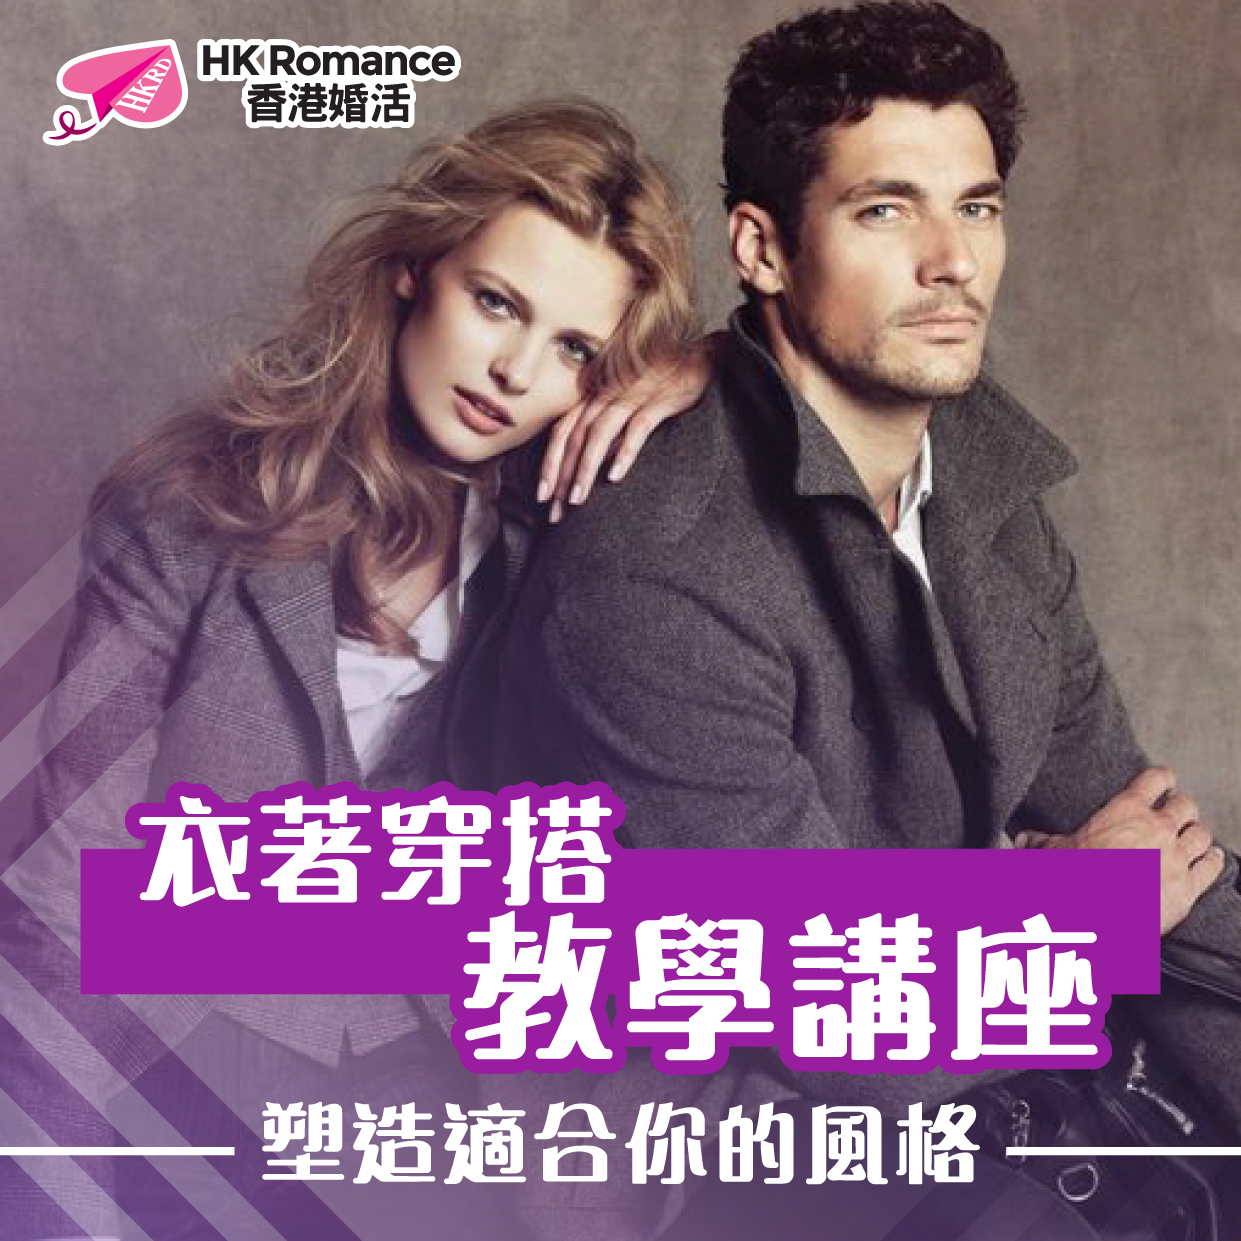 (完滿舉行) 衣著穿搭教學講座 - 2021年1月11日(Mon) 香港交友約會業協會 Hong Kong Speed Dating Federation - Speed Dating , 一對一約會, 單對單約會, 約會行業, 約會配對